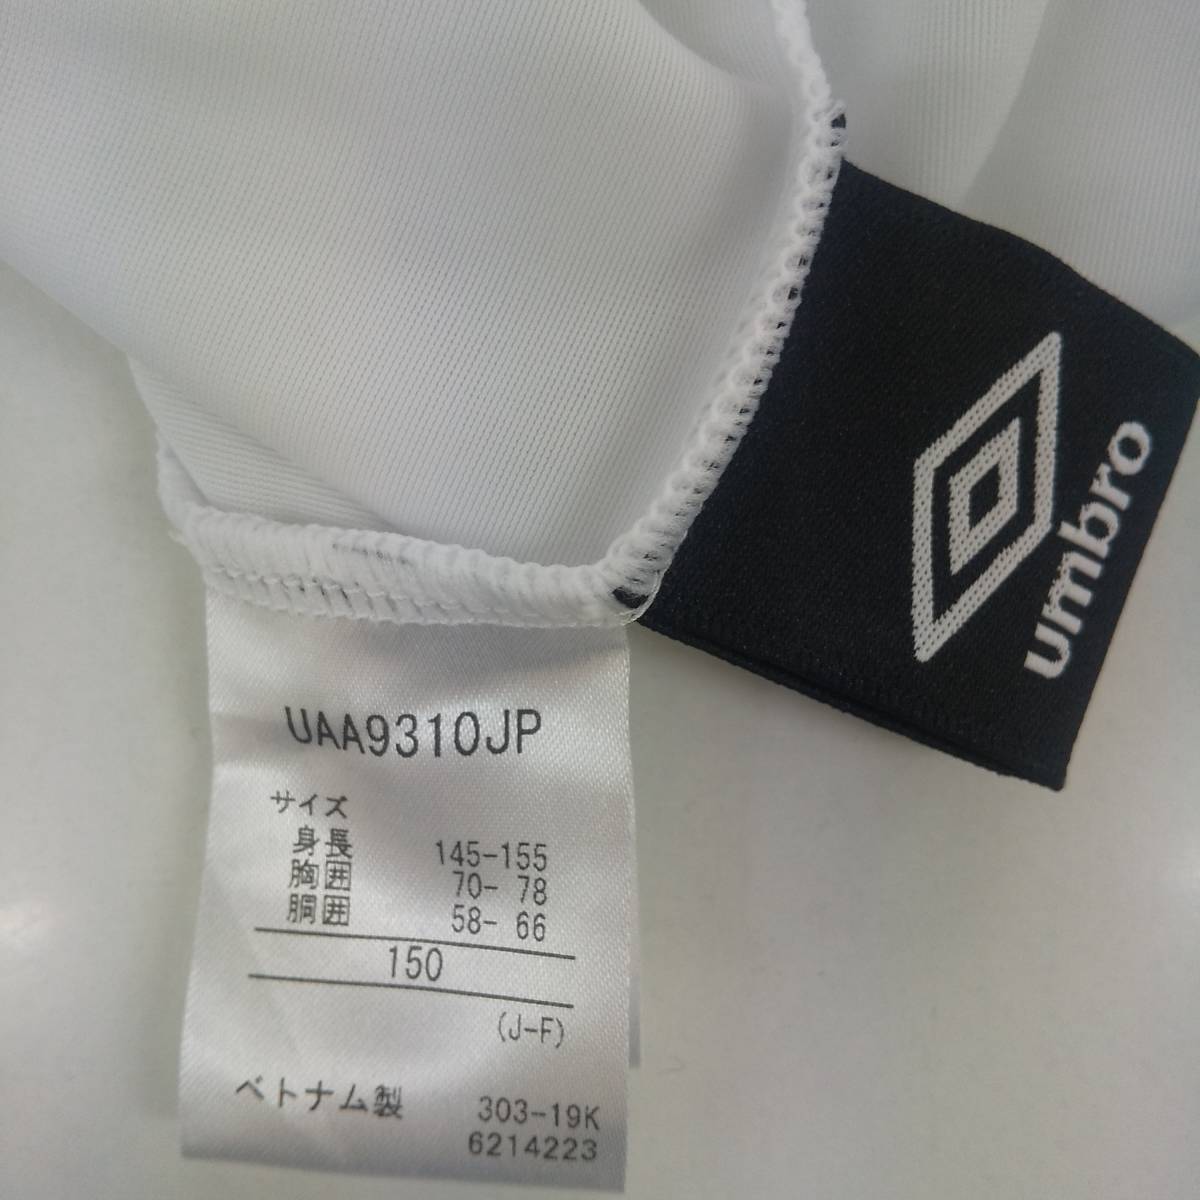 88-00987 бесплатная доставка [ outlet ] UMBRO Umbro длинный трико Junior Kids 150cm белый 